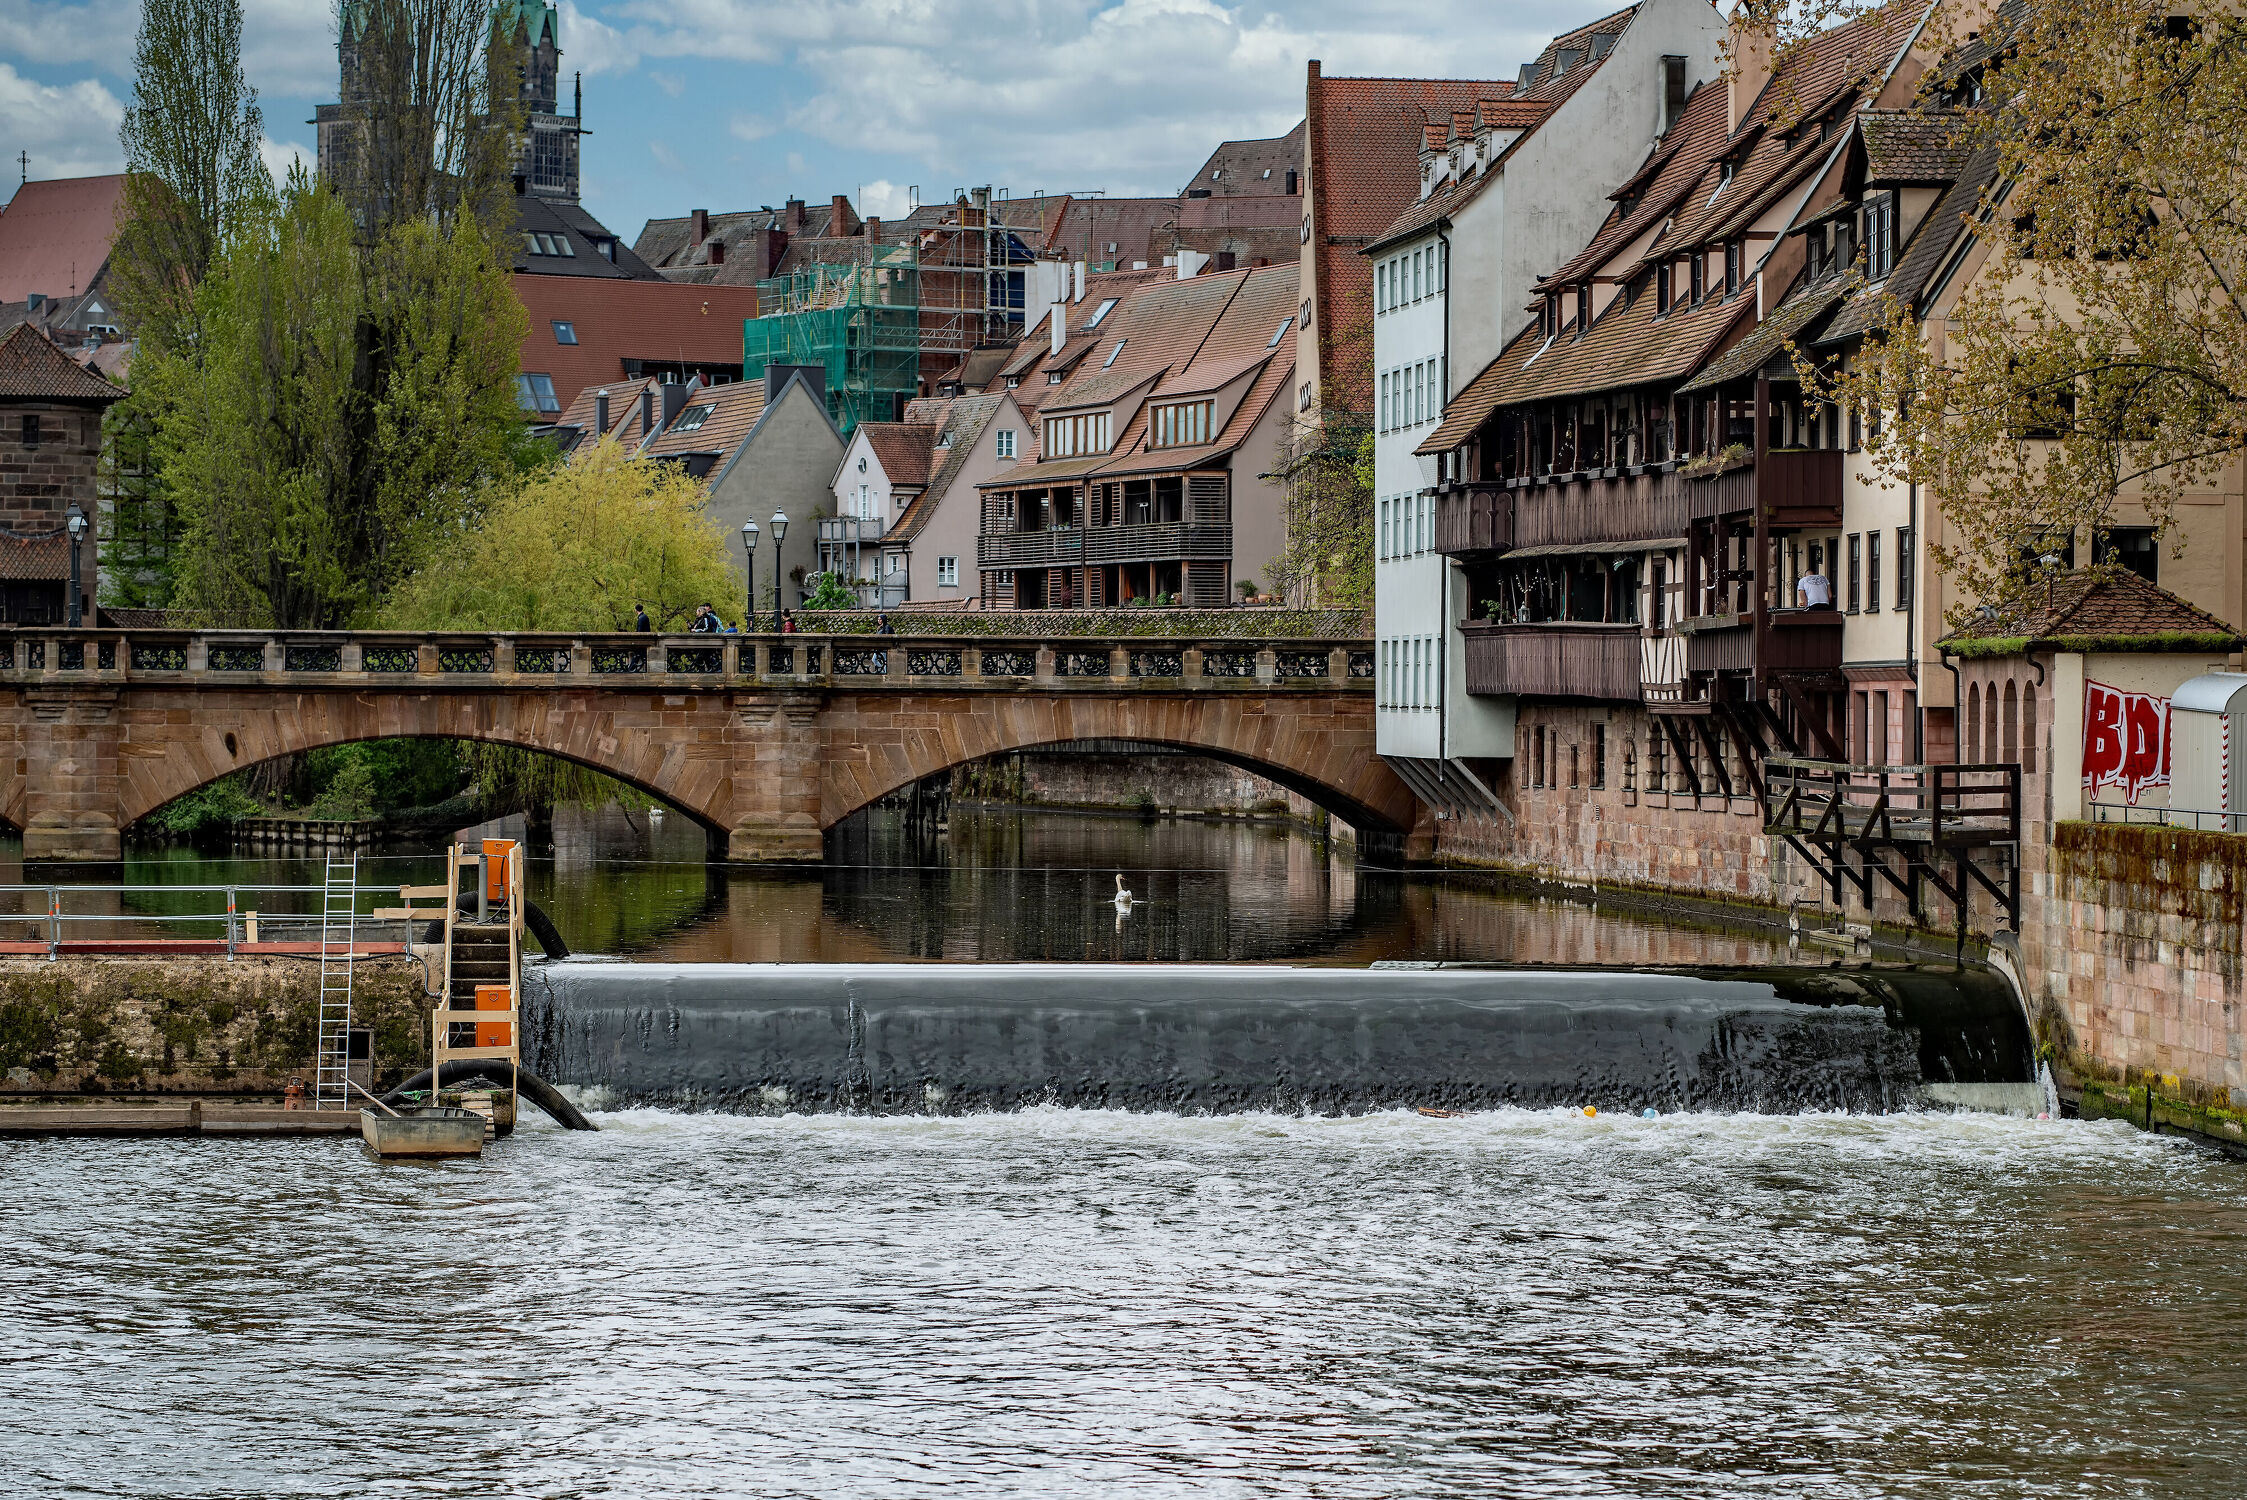 Bild mit Wasser, Jahreszeiten, Frühling, Gebäude, Häuser, Brücke, Fluss, nürnberg, historische Bauten, Pegnitz